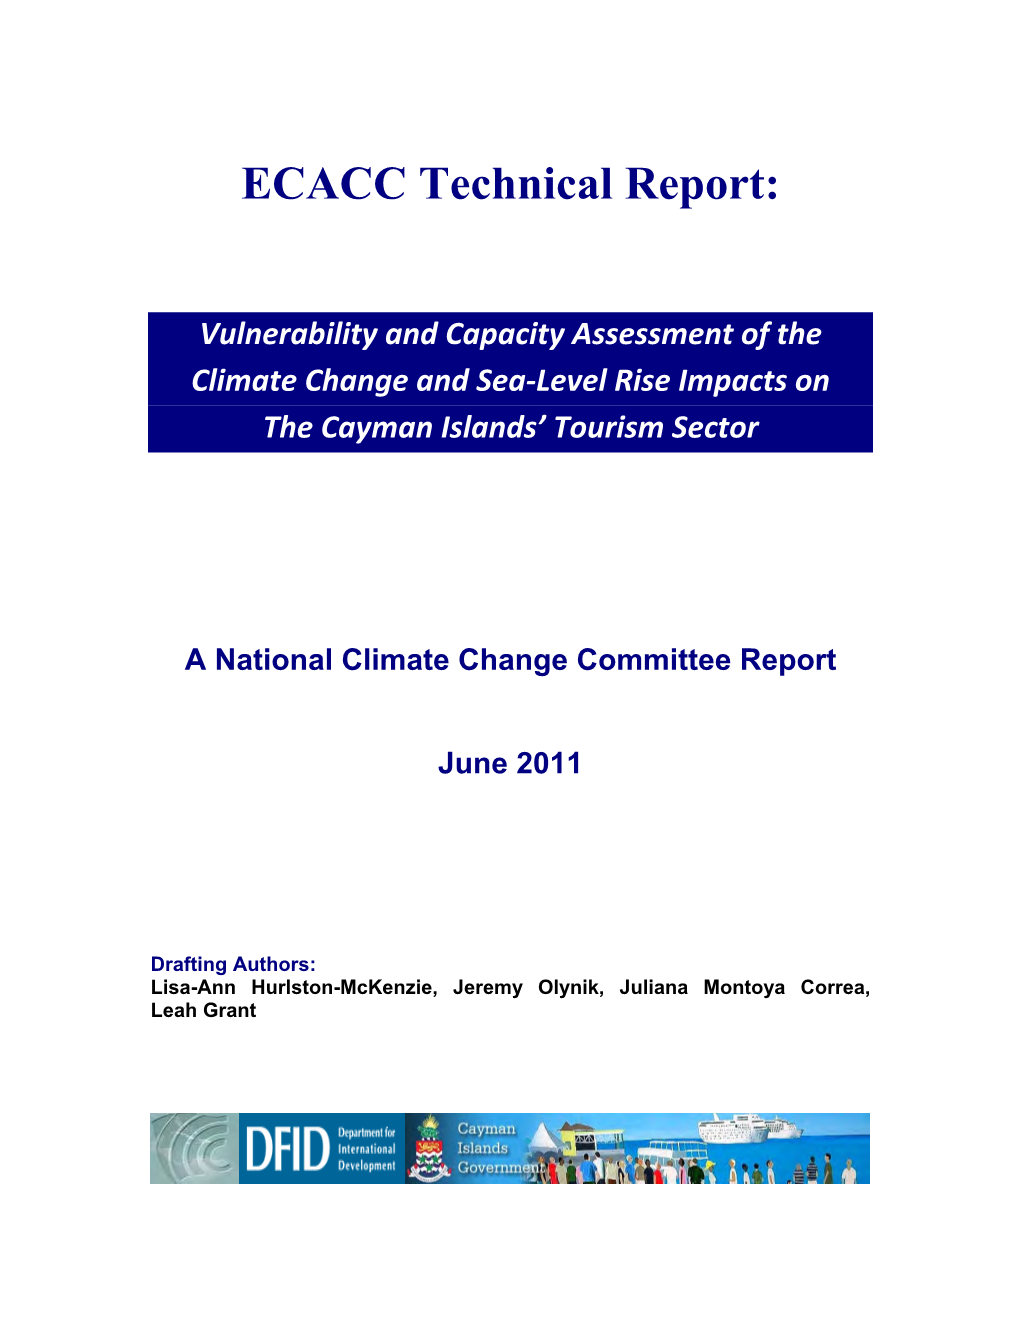 Part-1 VCA Report (June 2011)